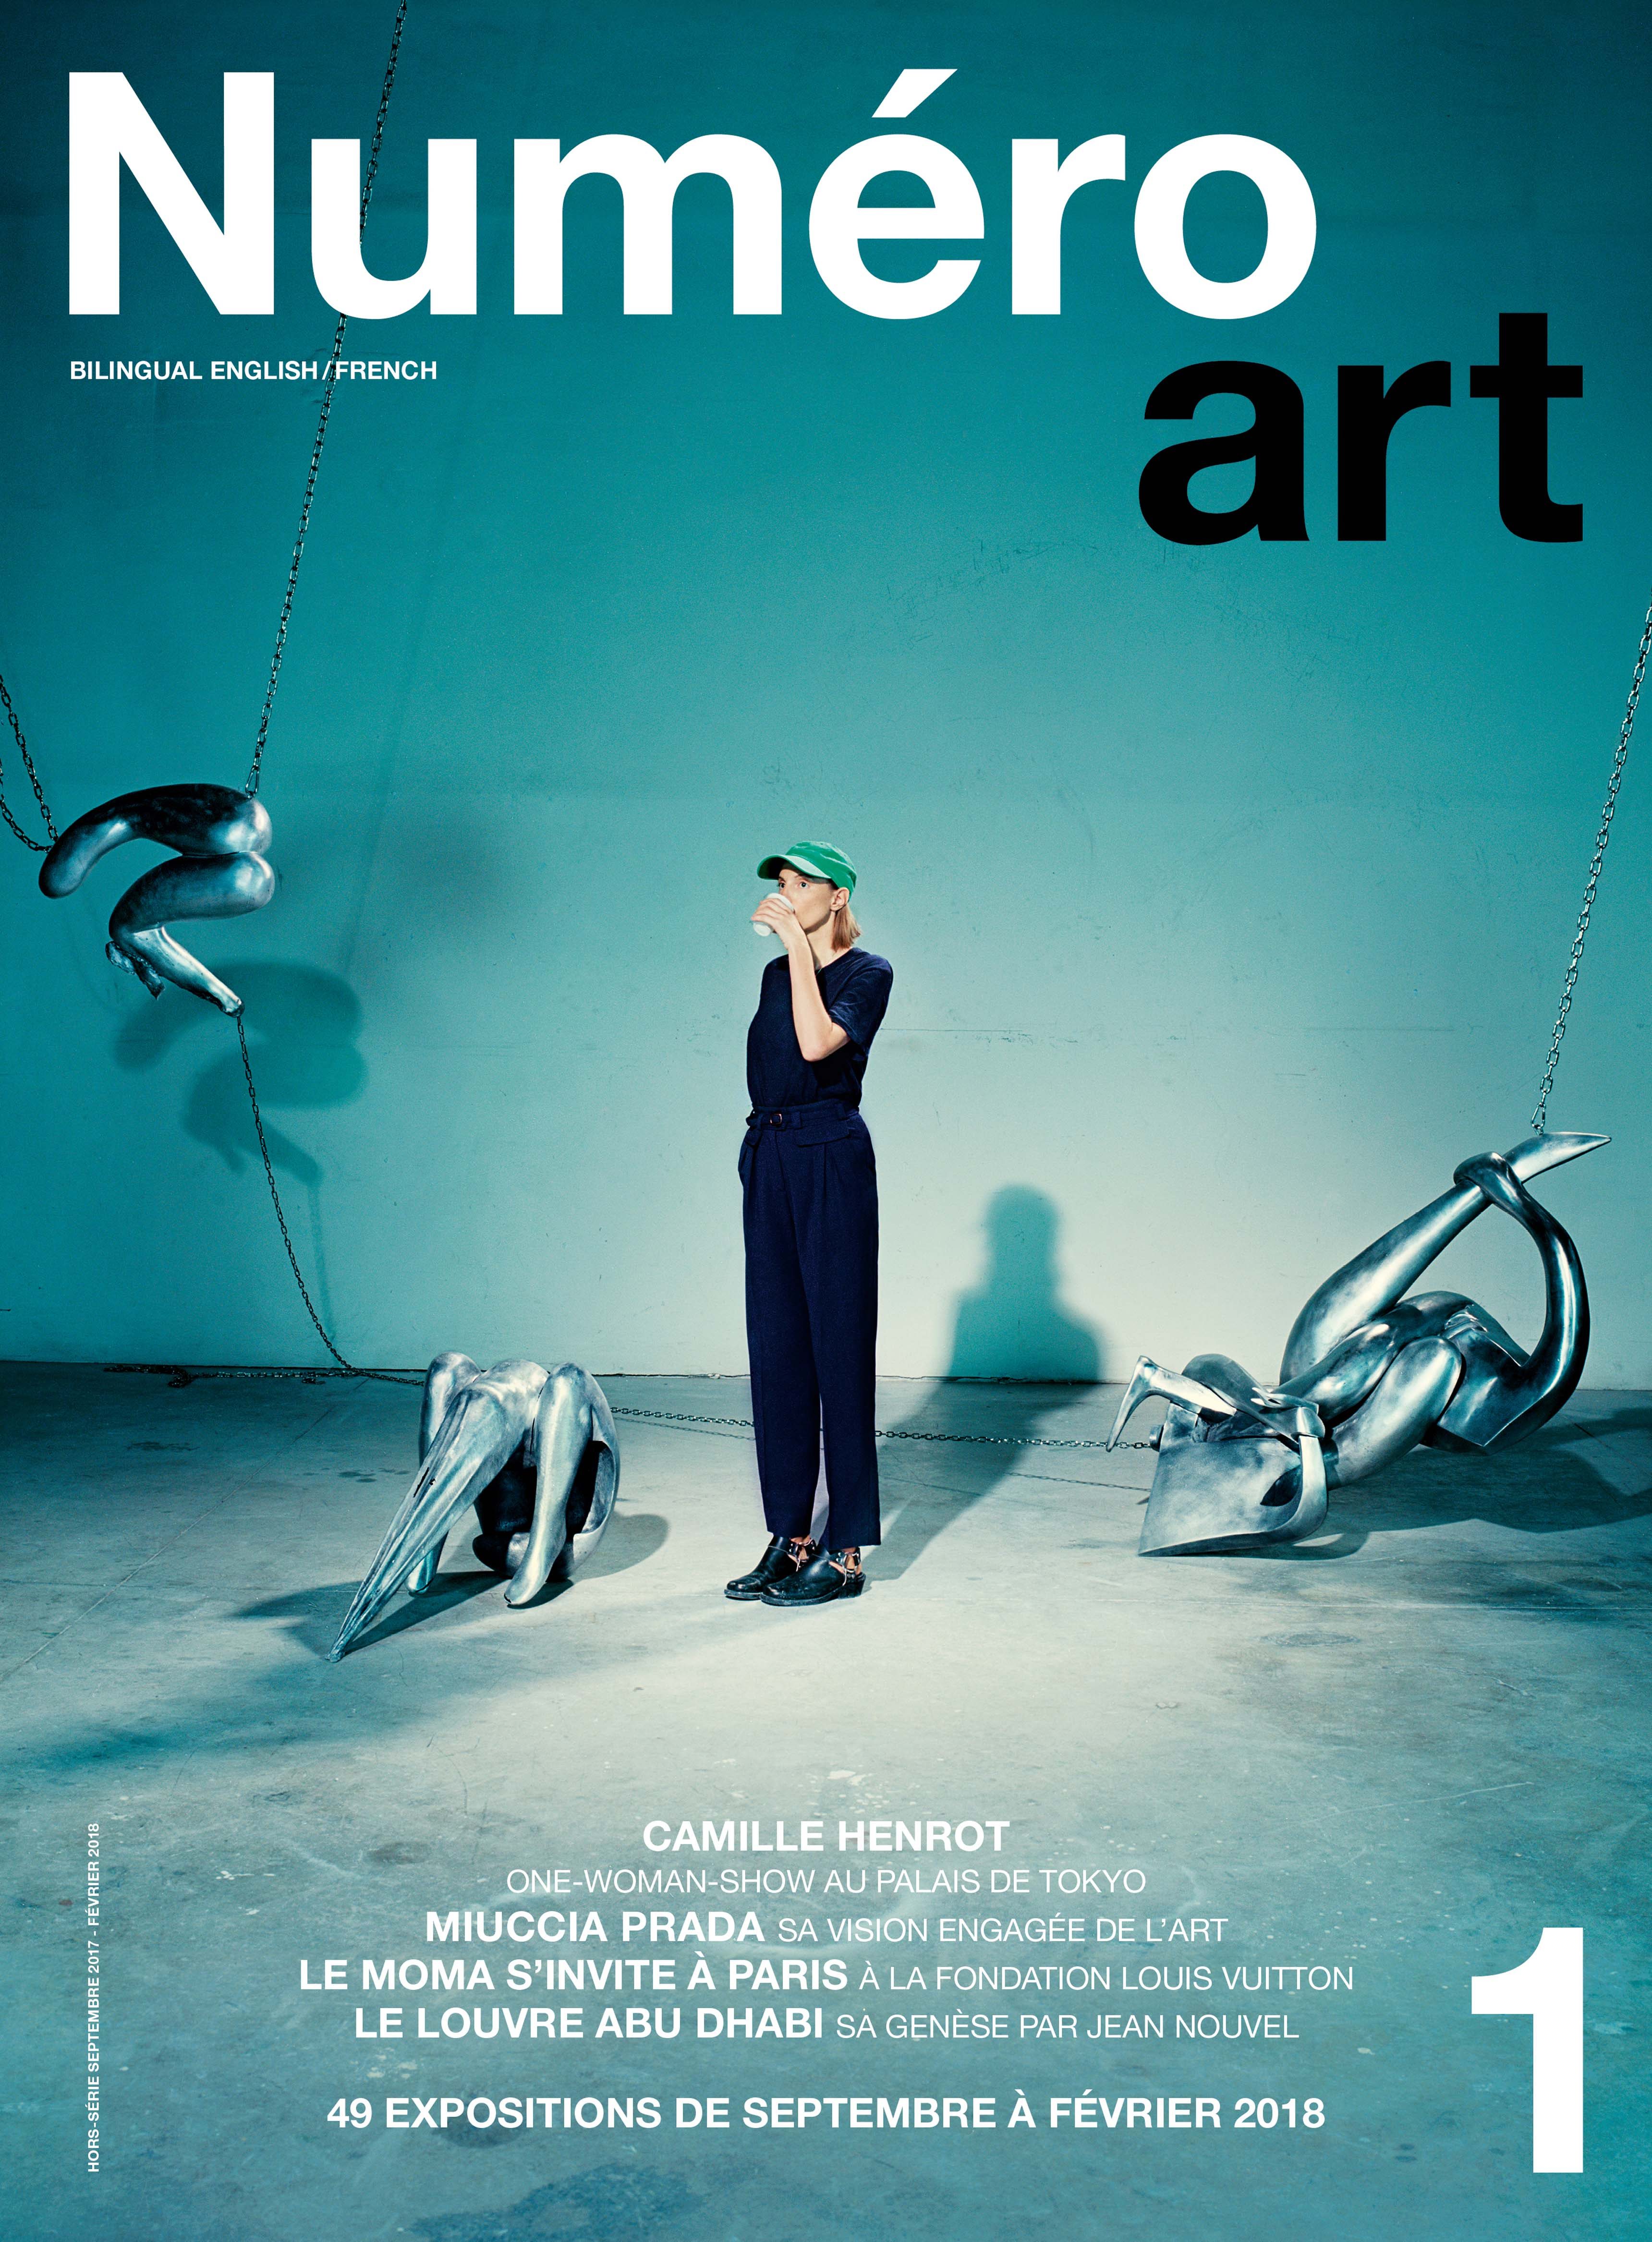 Cover Numéro art, Camille Henrot photographiée par Miles Aldrige.